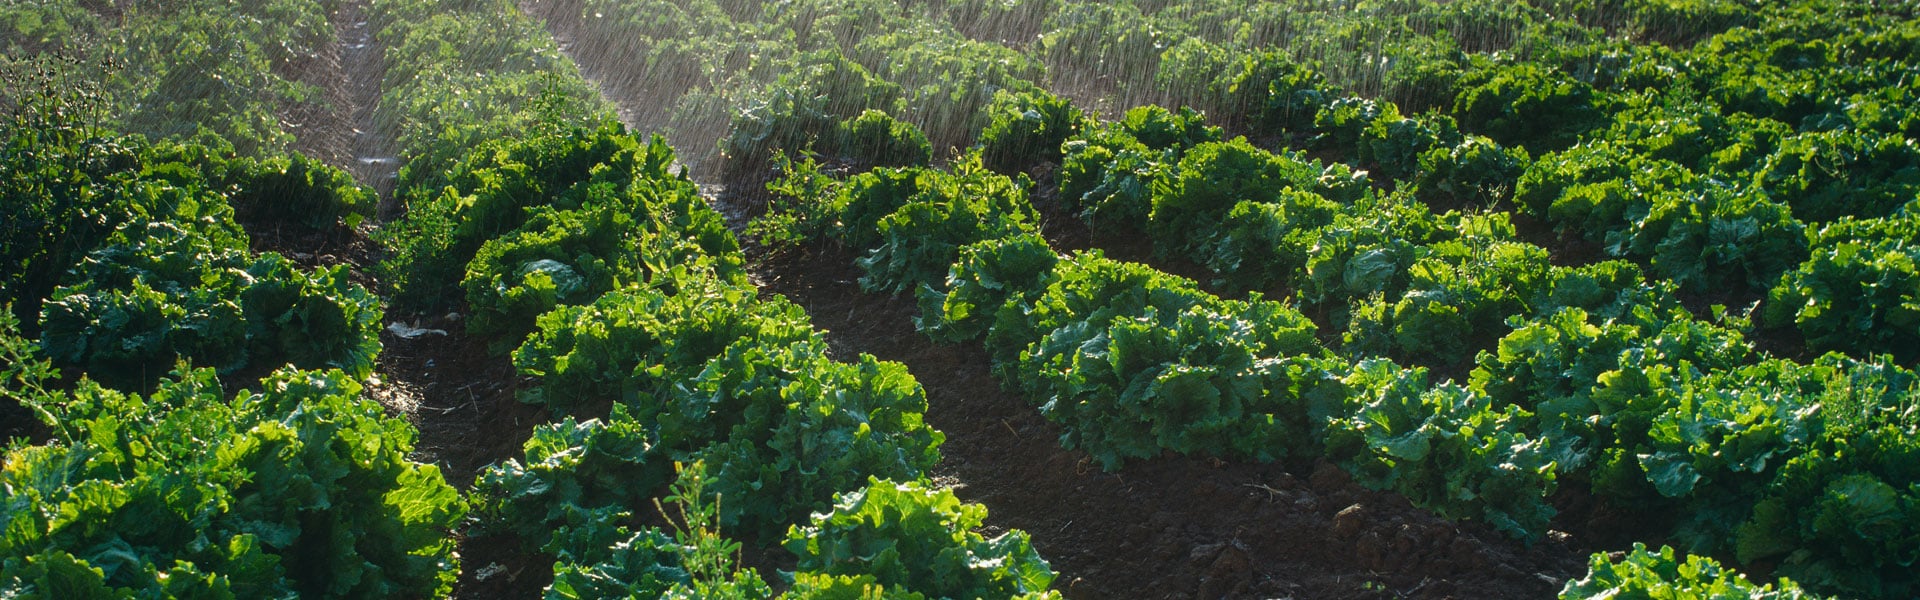 Farm fields conceptualizing Nutrien's procurement transformation.